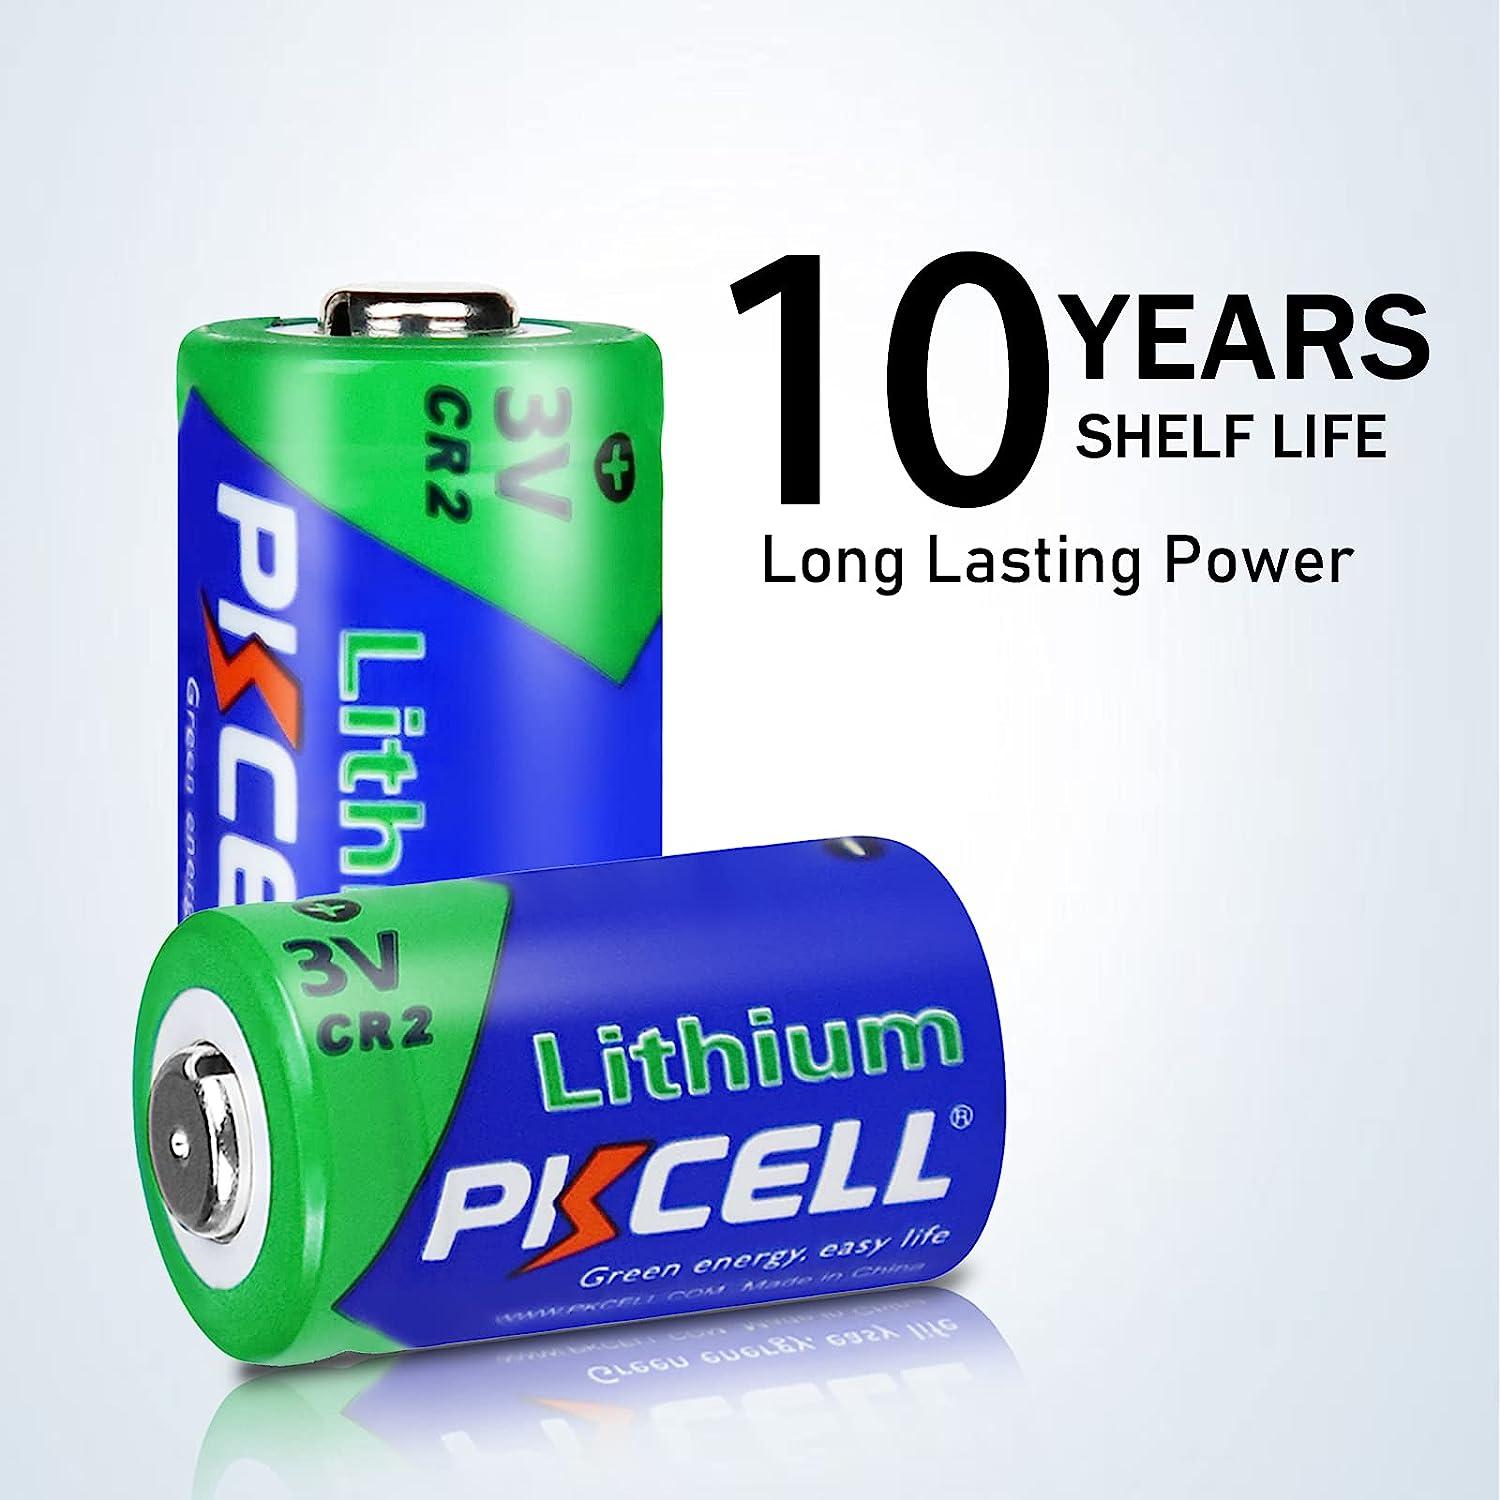 PKCELL CR2 CR15H270 3v 850mAh Lithium Photo Battery for Motion Sensors (2pc)